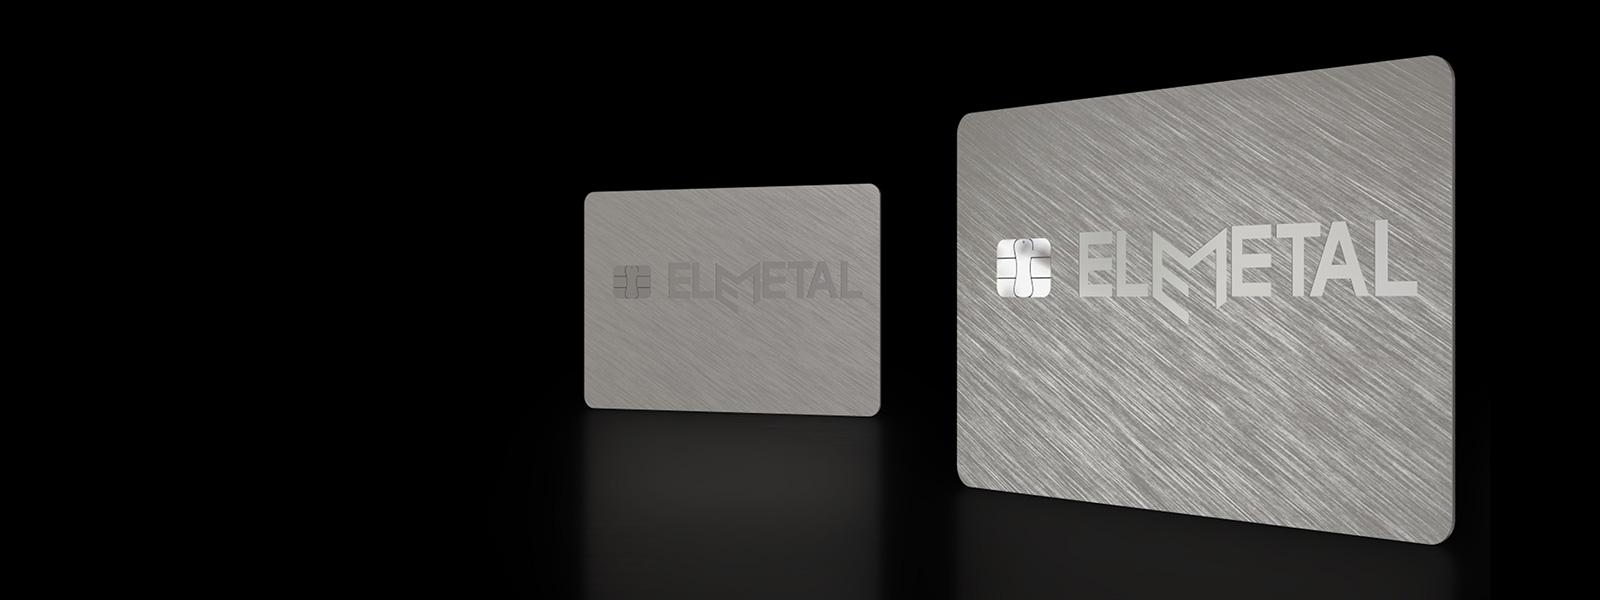 Elemetal range of metal banking cards